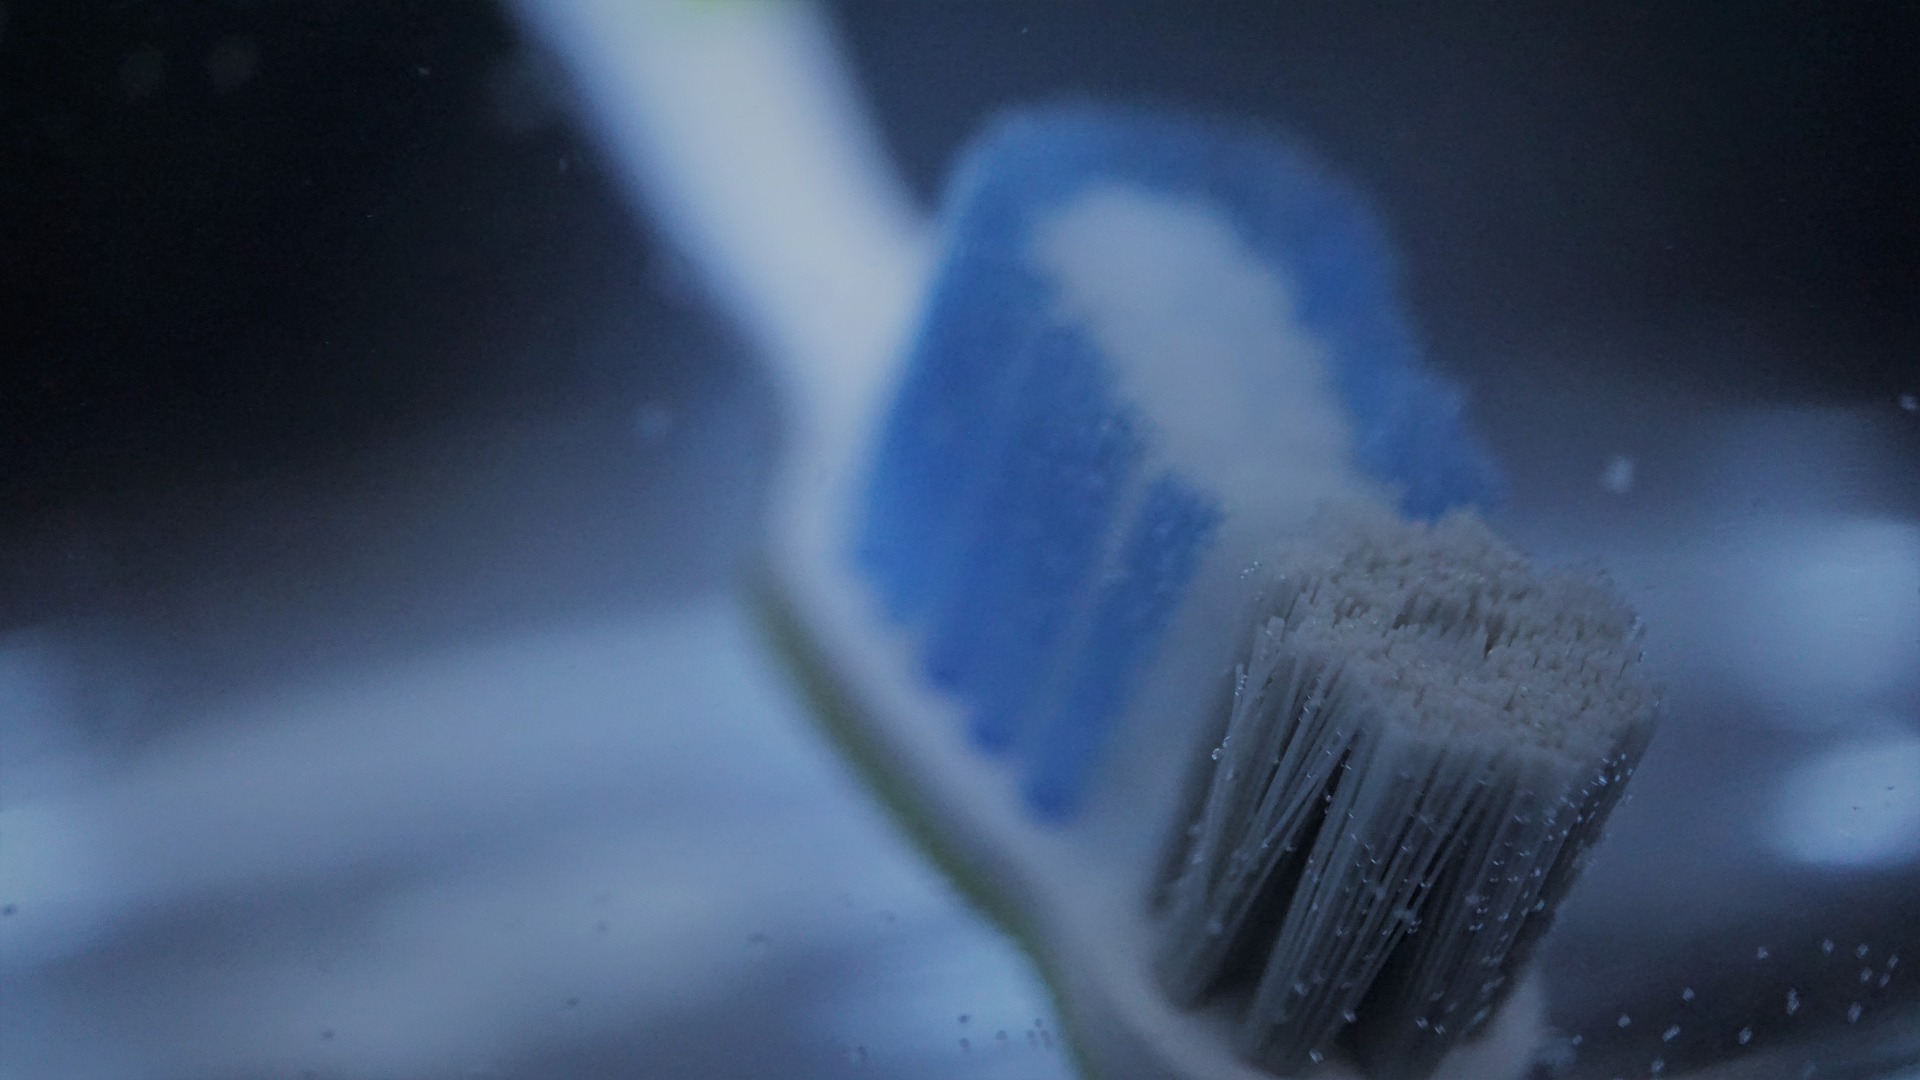 Cât timp ar trebui să ne spălăm pe dinți? Sfaturile experților